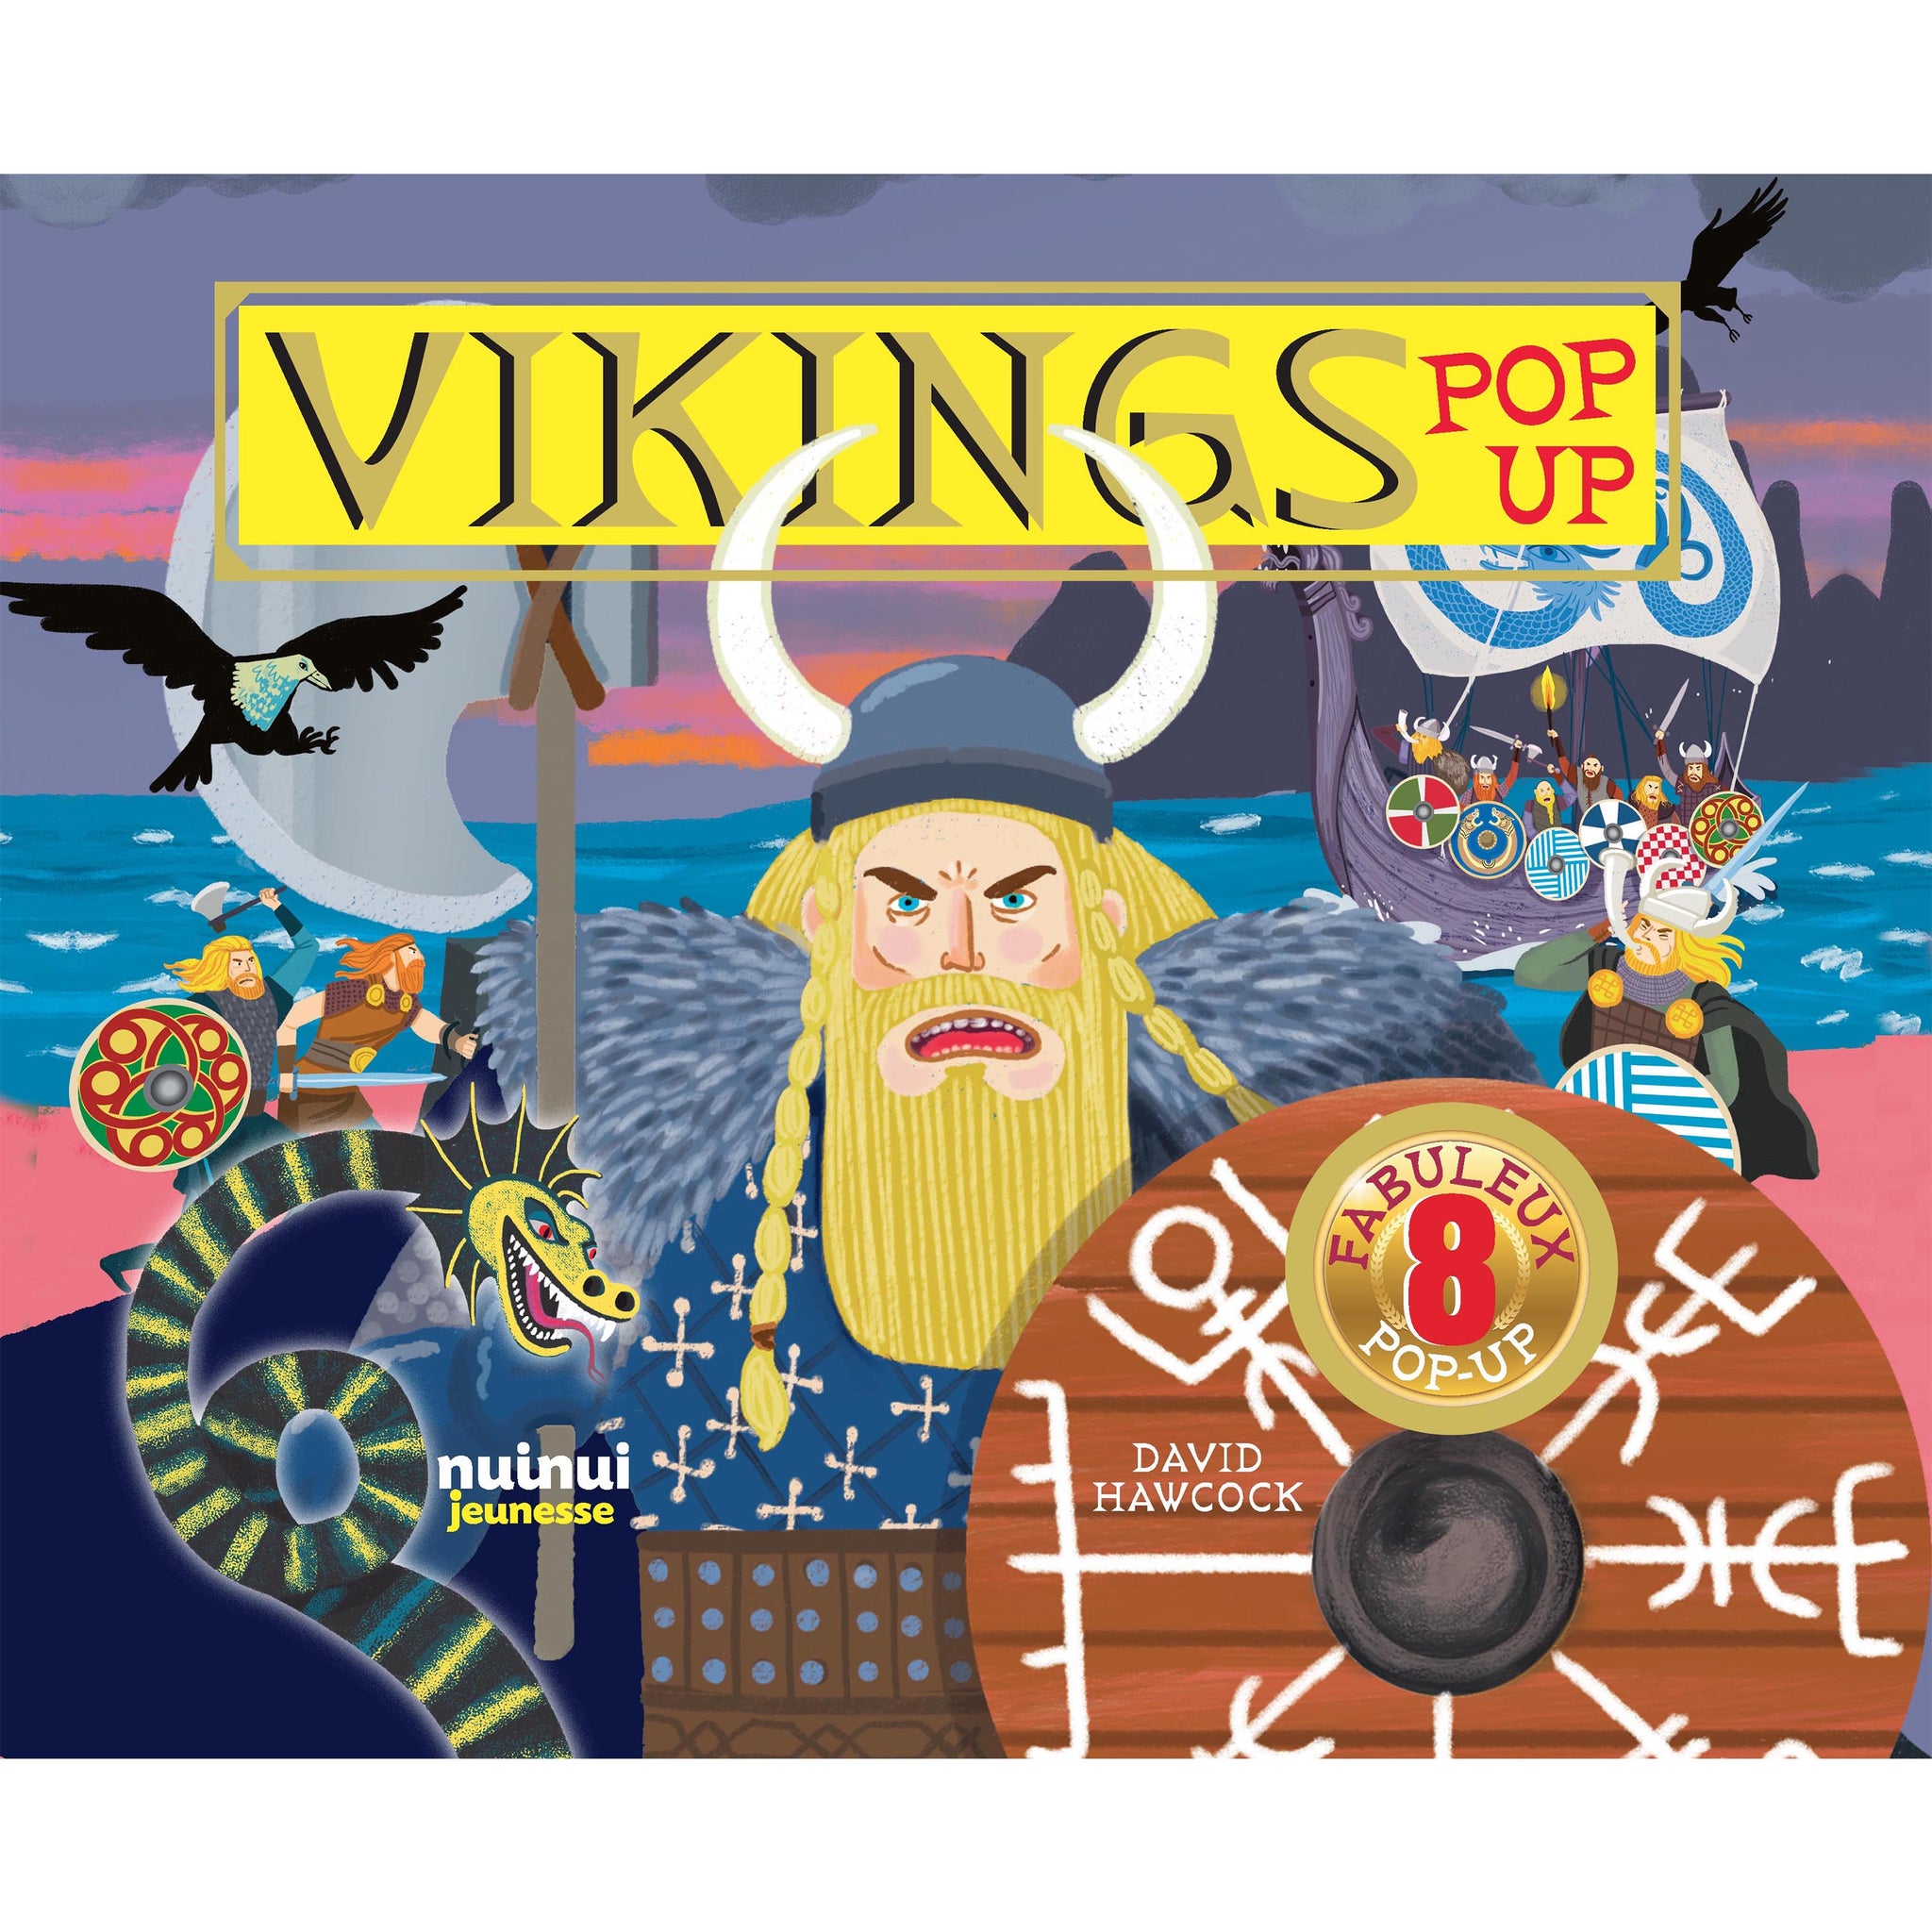 Pop-up historique - Vikings